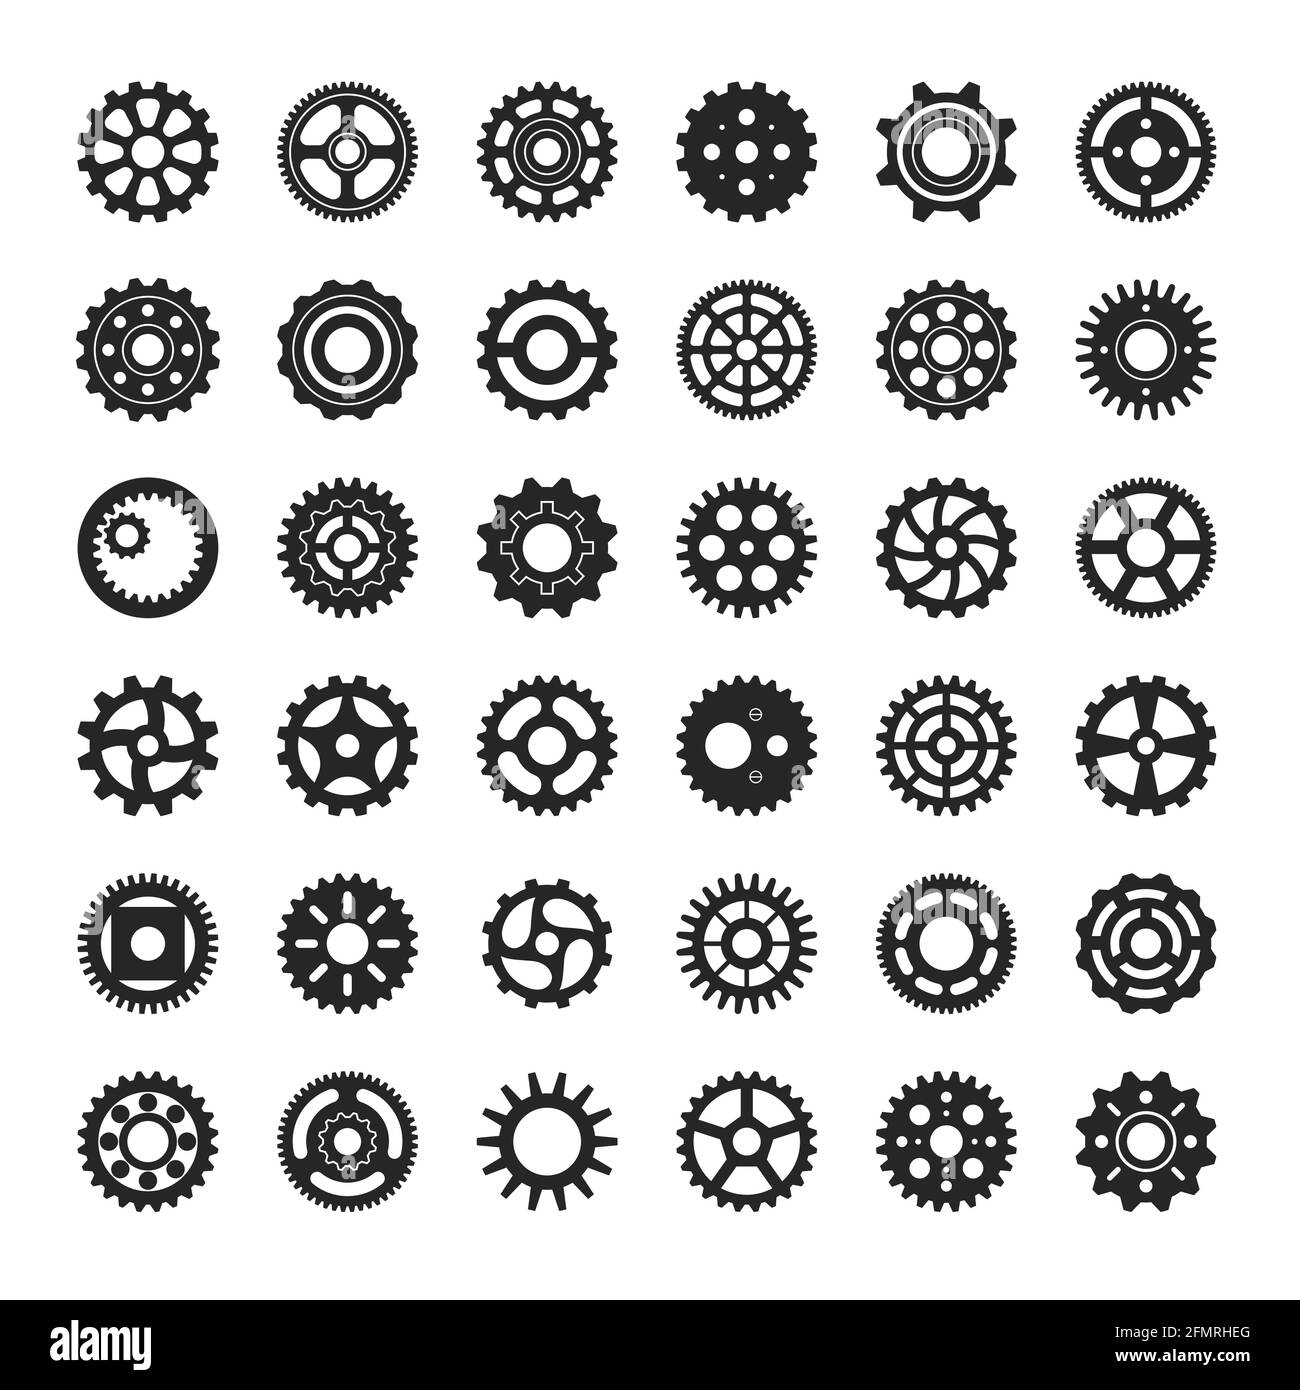 Zahnradsymbol. Industriemotorgetriebe oder Zahnrad Runde Zahnrad-Mechanismus, Maschinenbauräder, Uhrzahnräder, mechanische Räder Vektor-Set. Fertigungs- und Engineering-Ausrüstung Stock Vektor